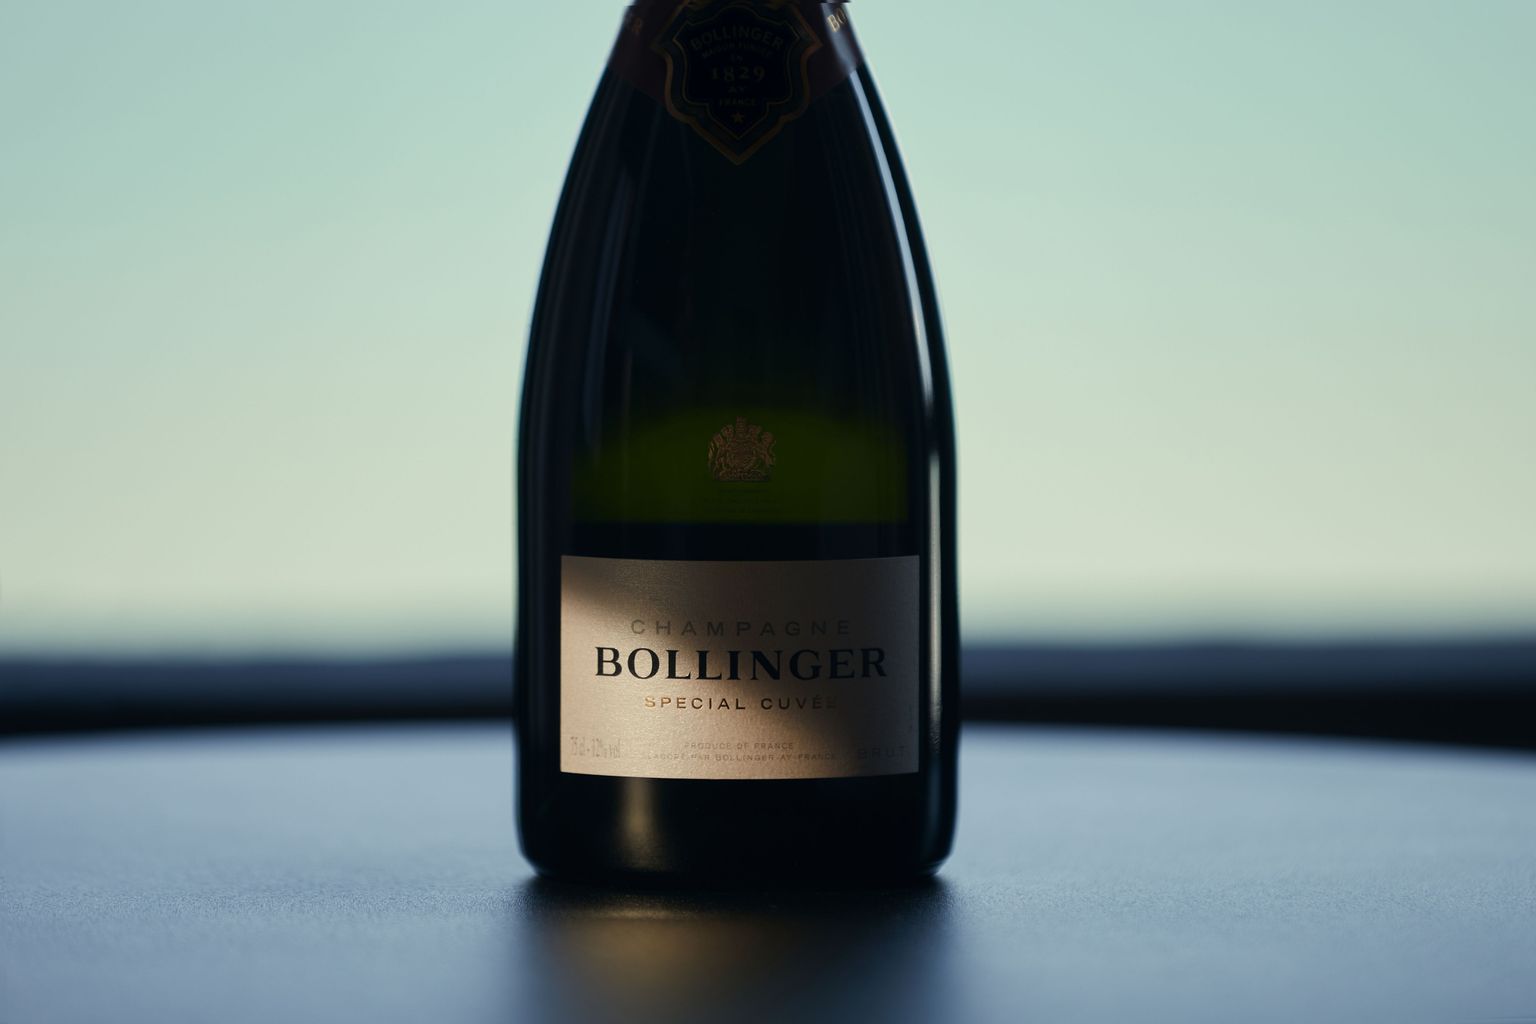 Special cuvée - and subtlety Depth Bollinger Champagne 